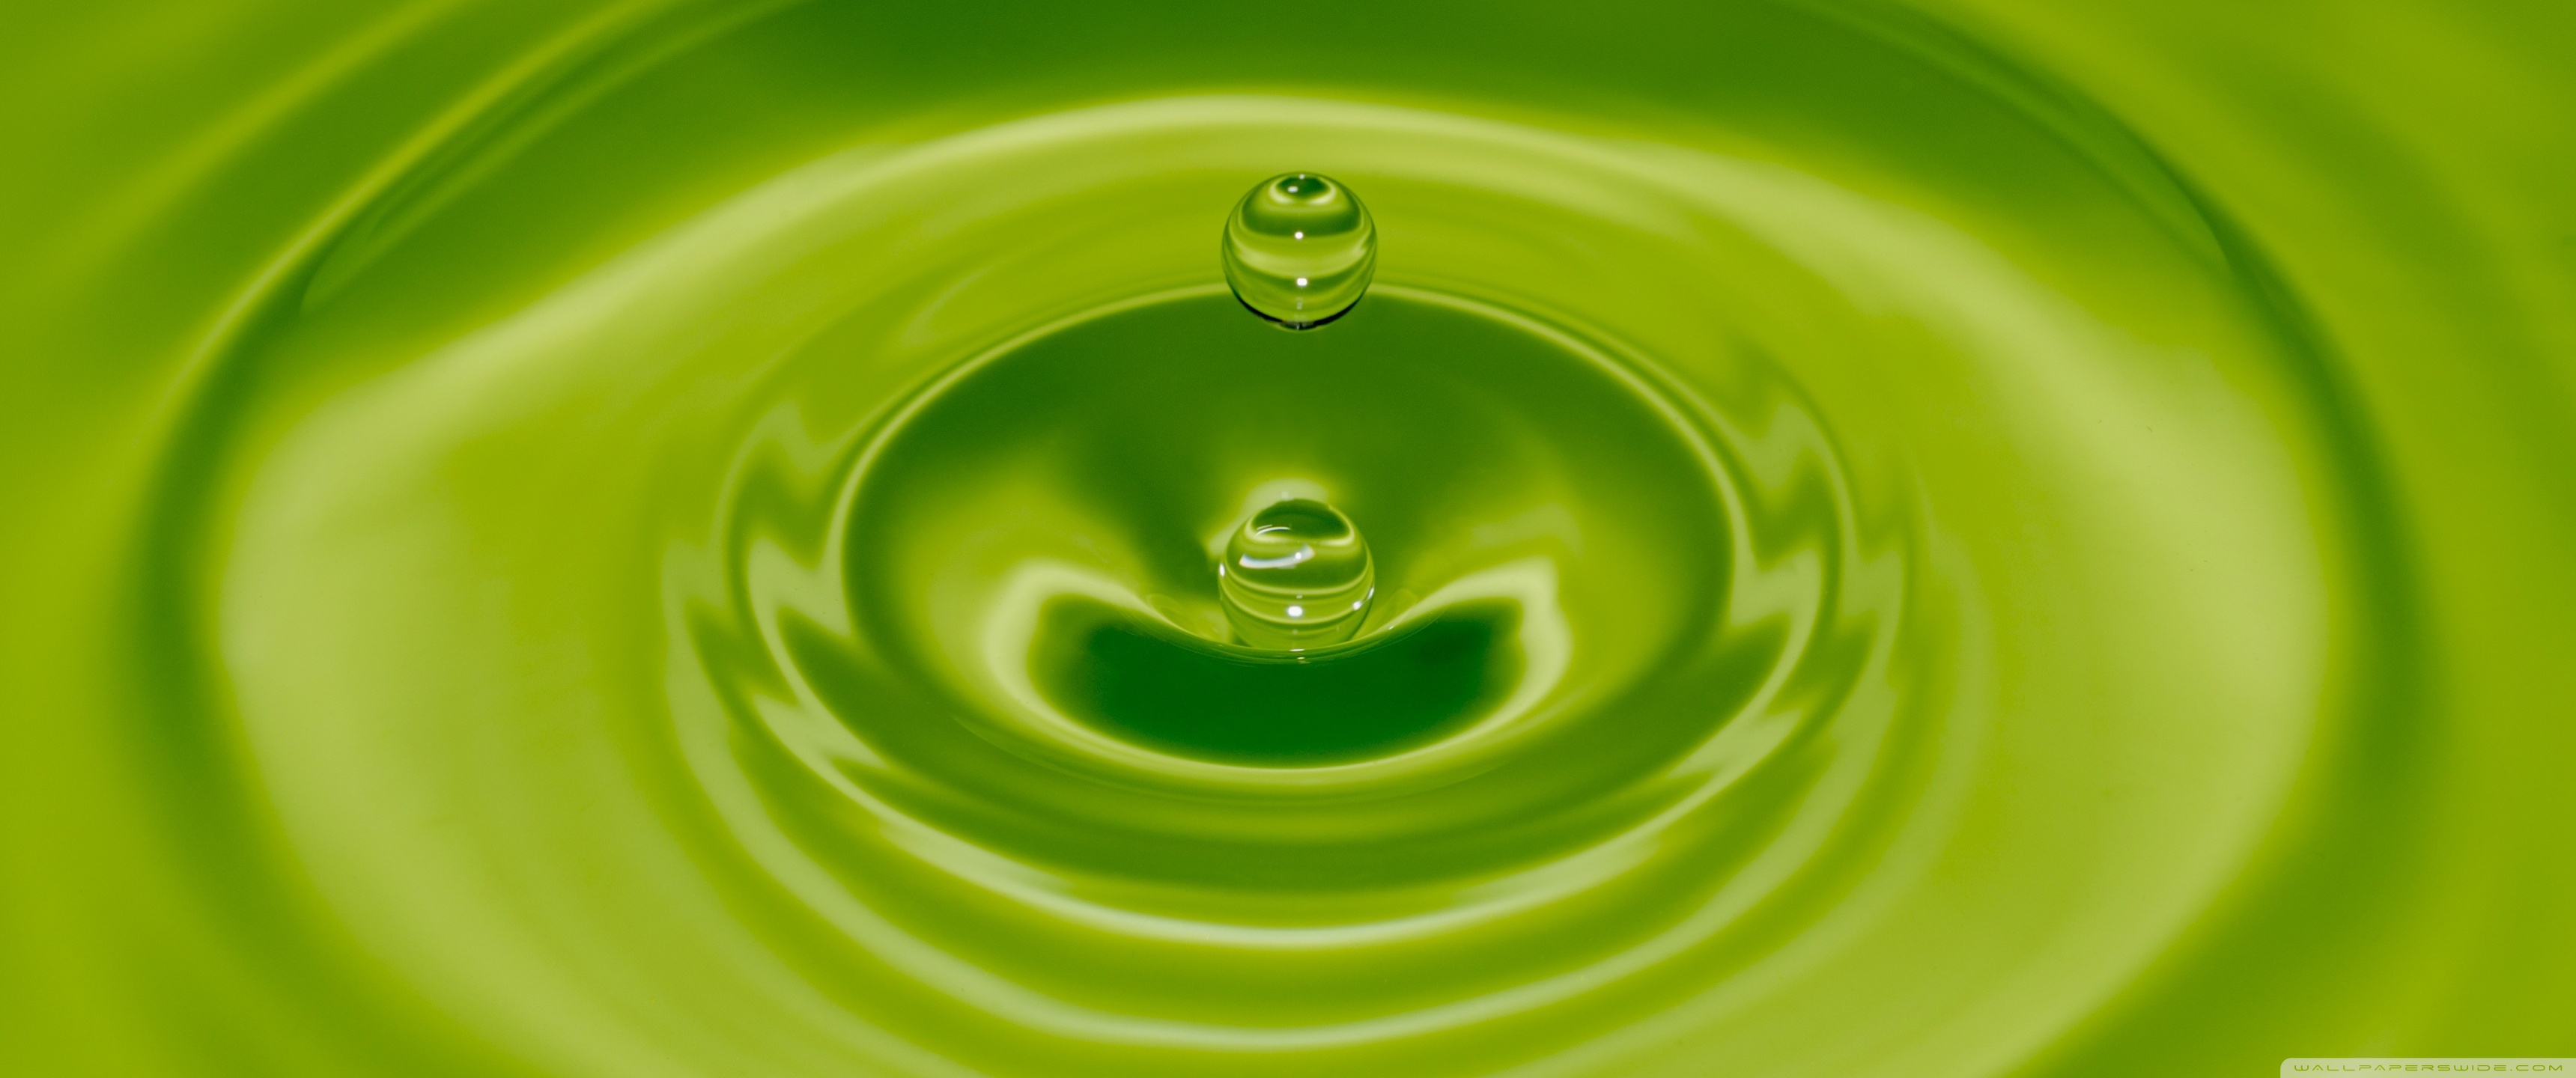 Цвет нормальных вод. Зеленая вода. Зеленая жидкость. Вода на зеленом фоне. Воды зеленого цвета.